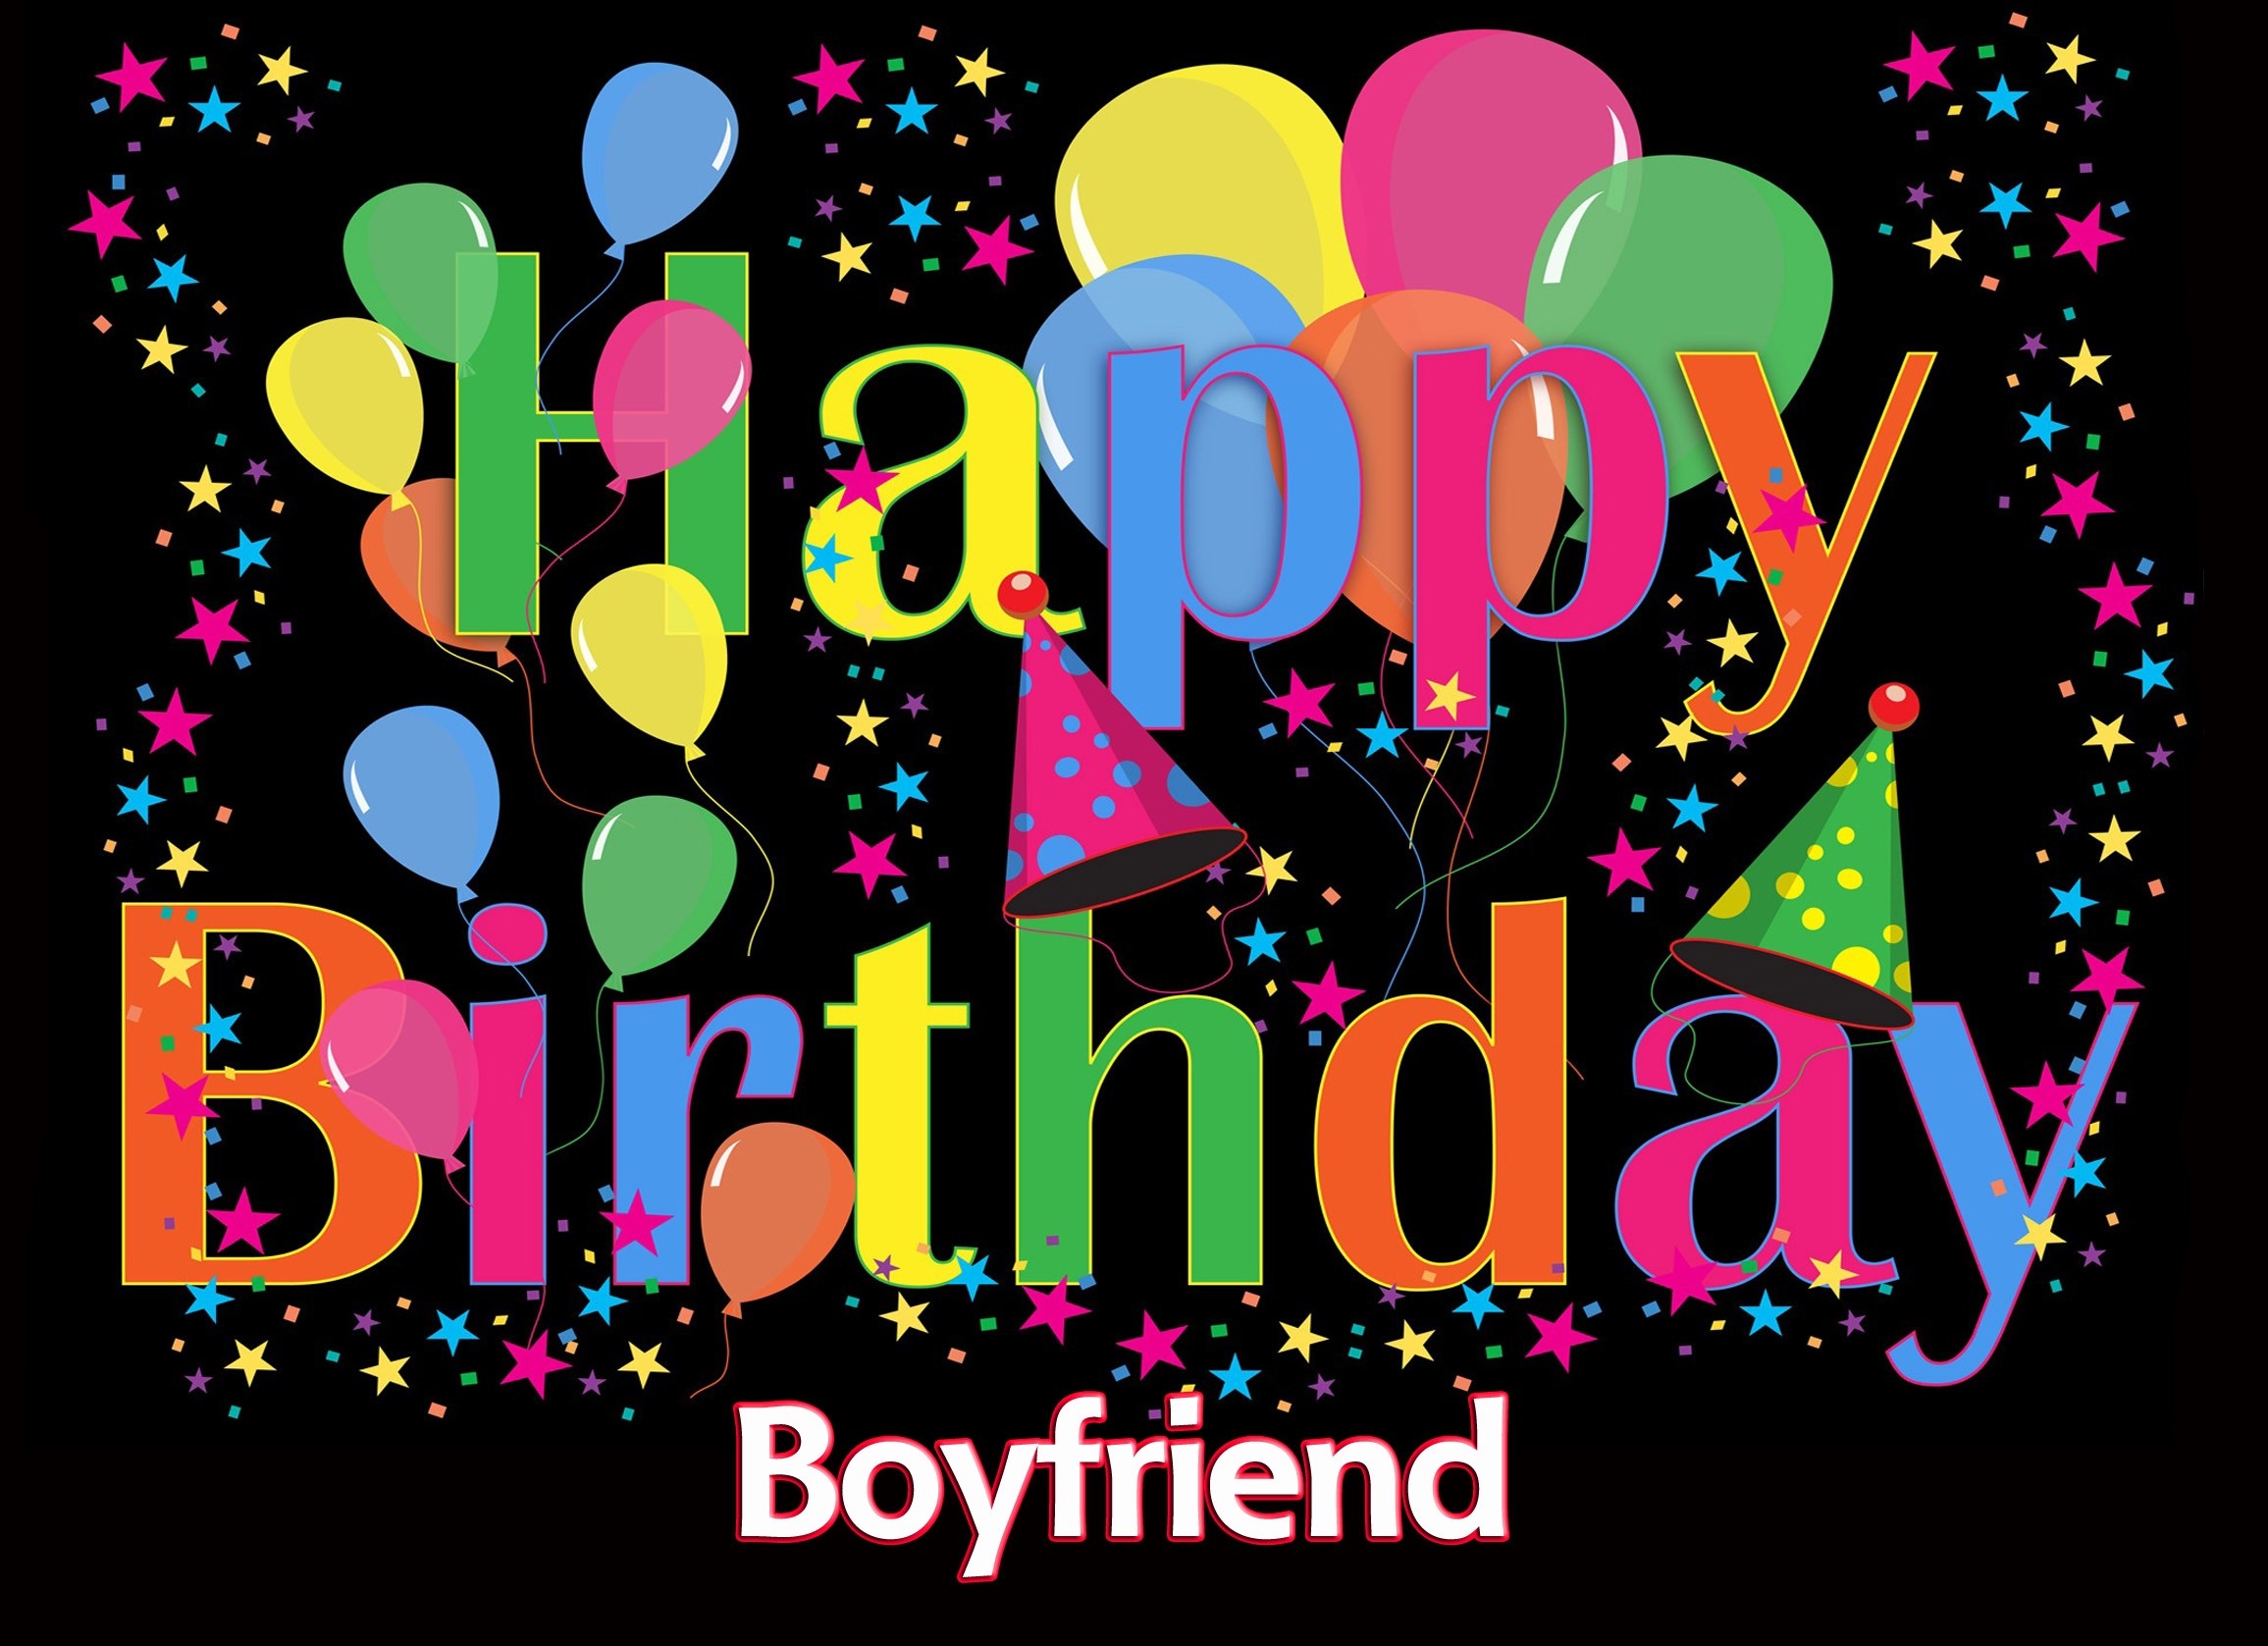 Happy Birthday 'Boyfriend' Greeting Card